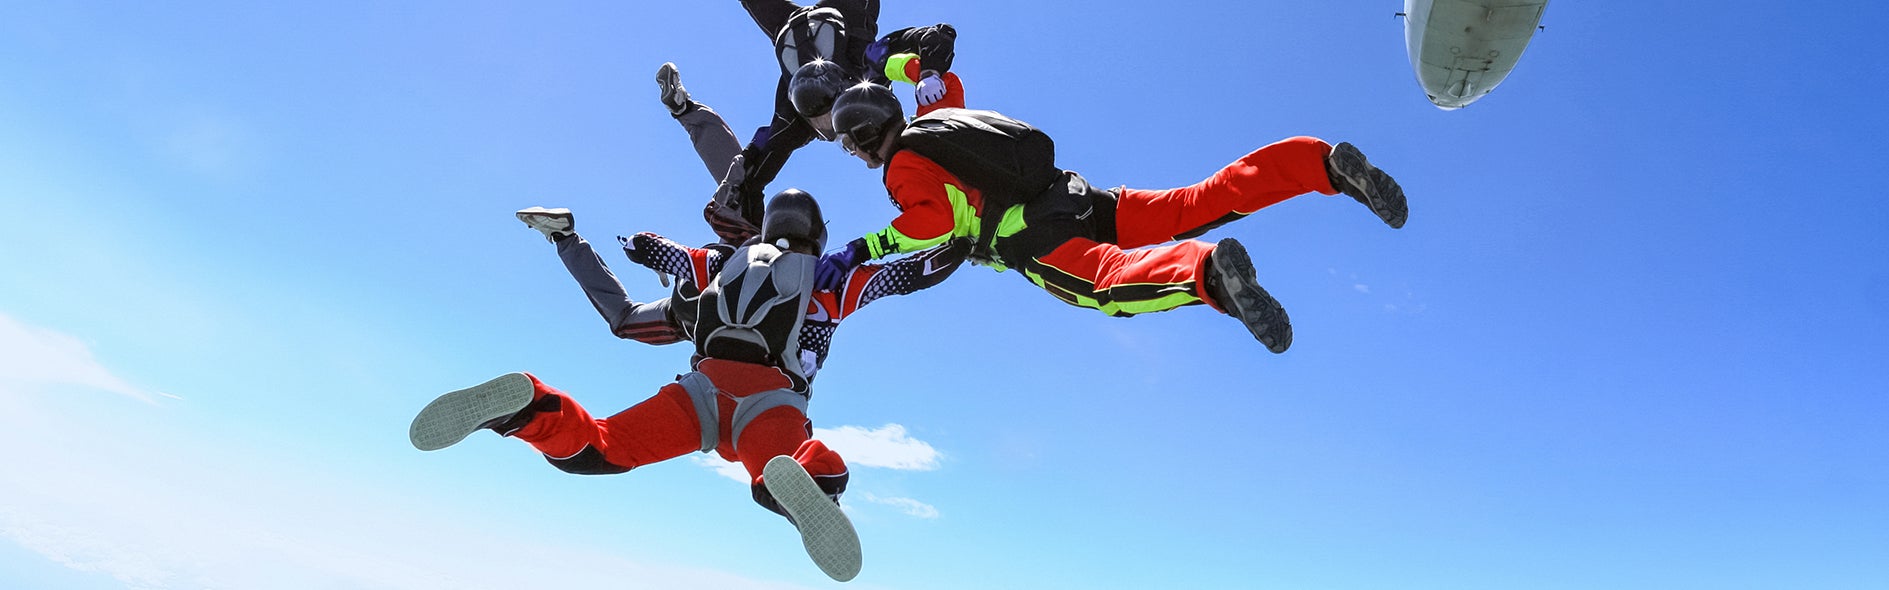 Imagen de paracaidistas disfrutando de una actividad de riesgo. Sin embargo, cumplir la reglamentación de productos químicos no debería serlo.